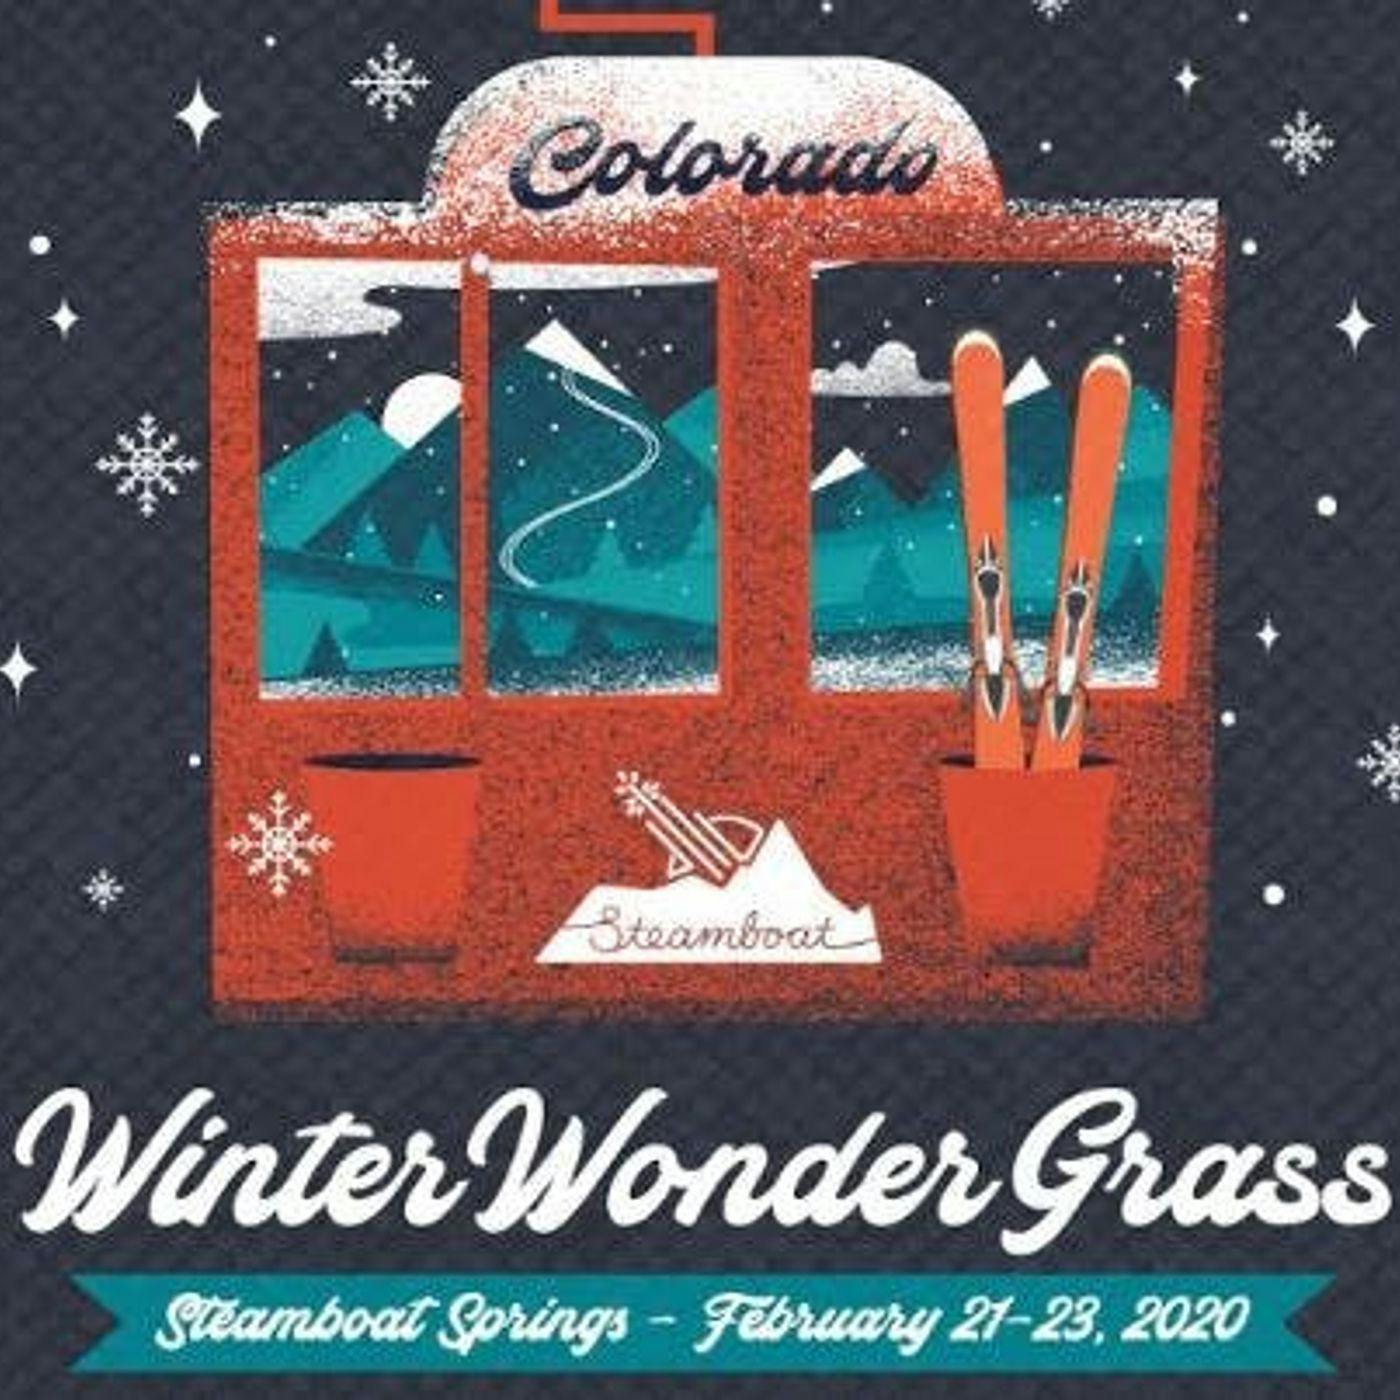 Winter Wonder Grass preview